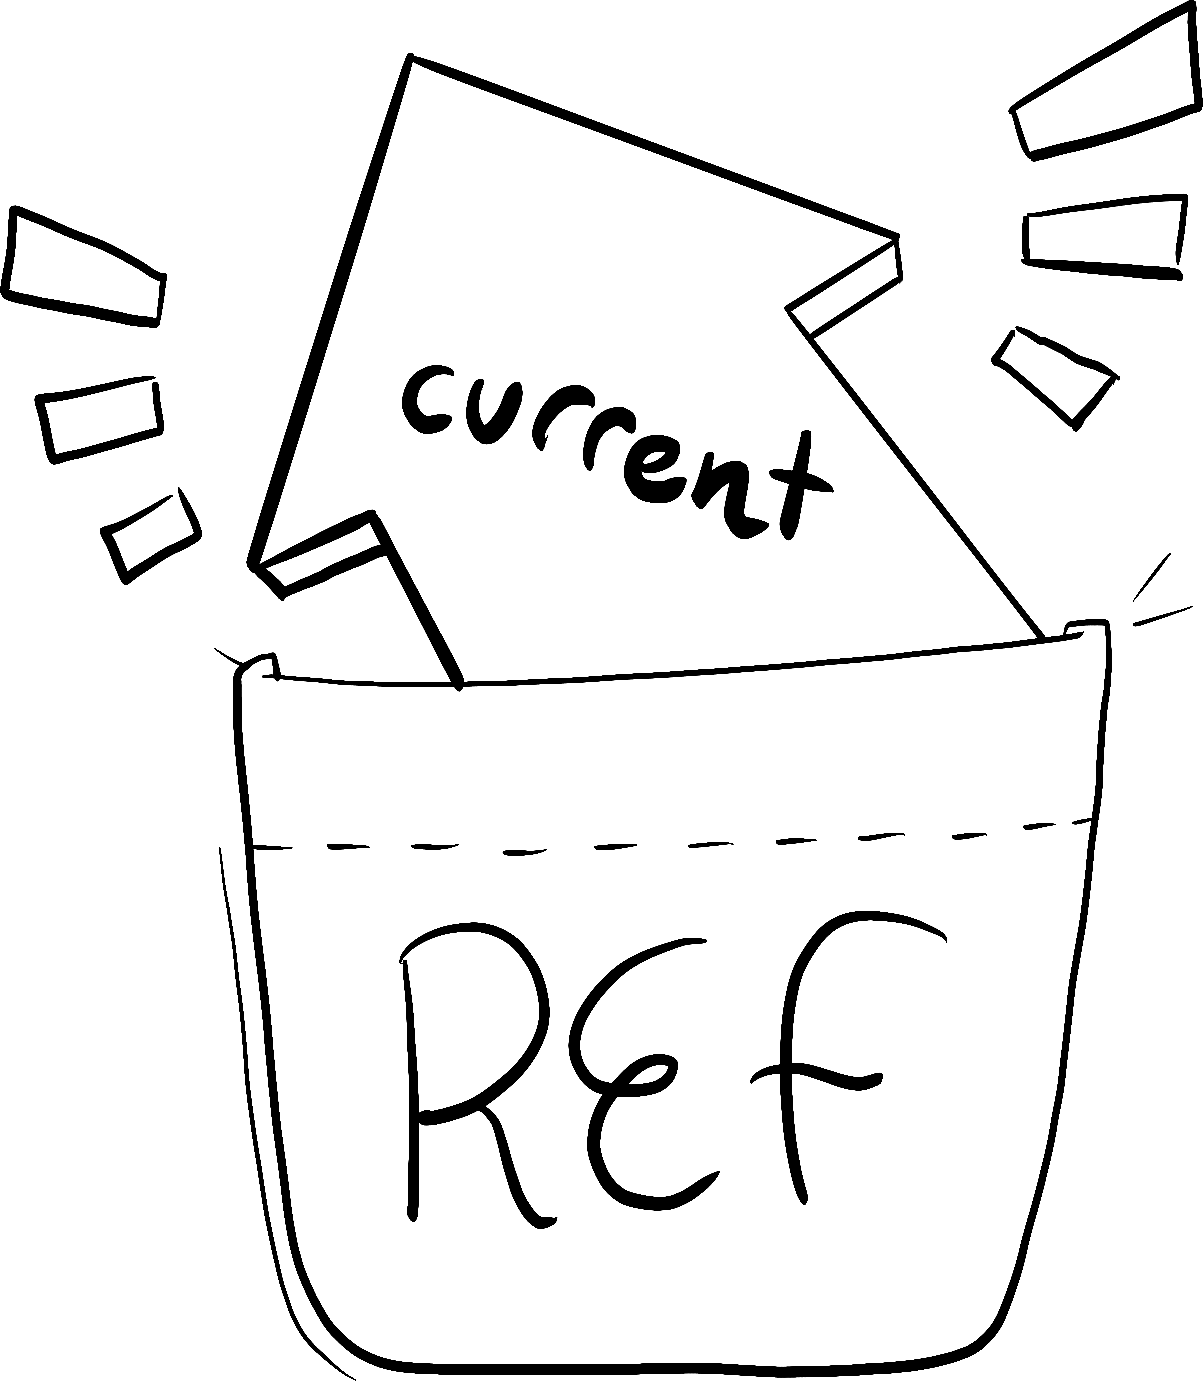 'current' と書かれた矢印が 'ref' と書かれたポケットに詰め込まれている。